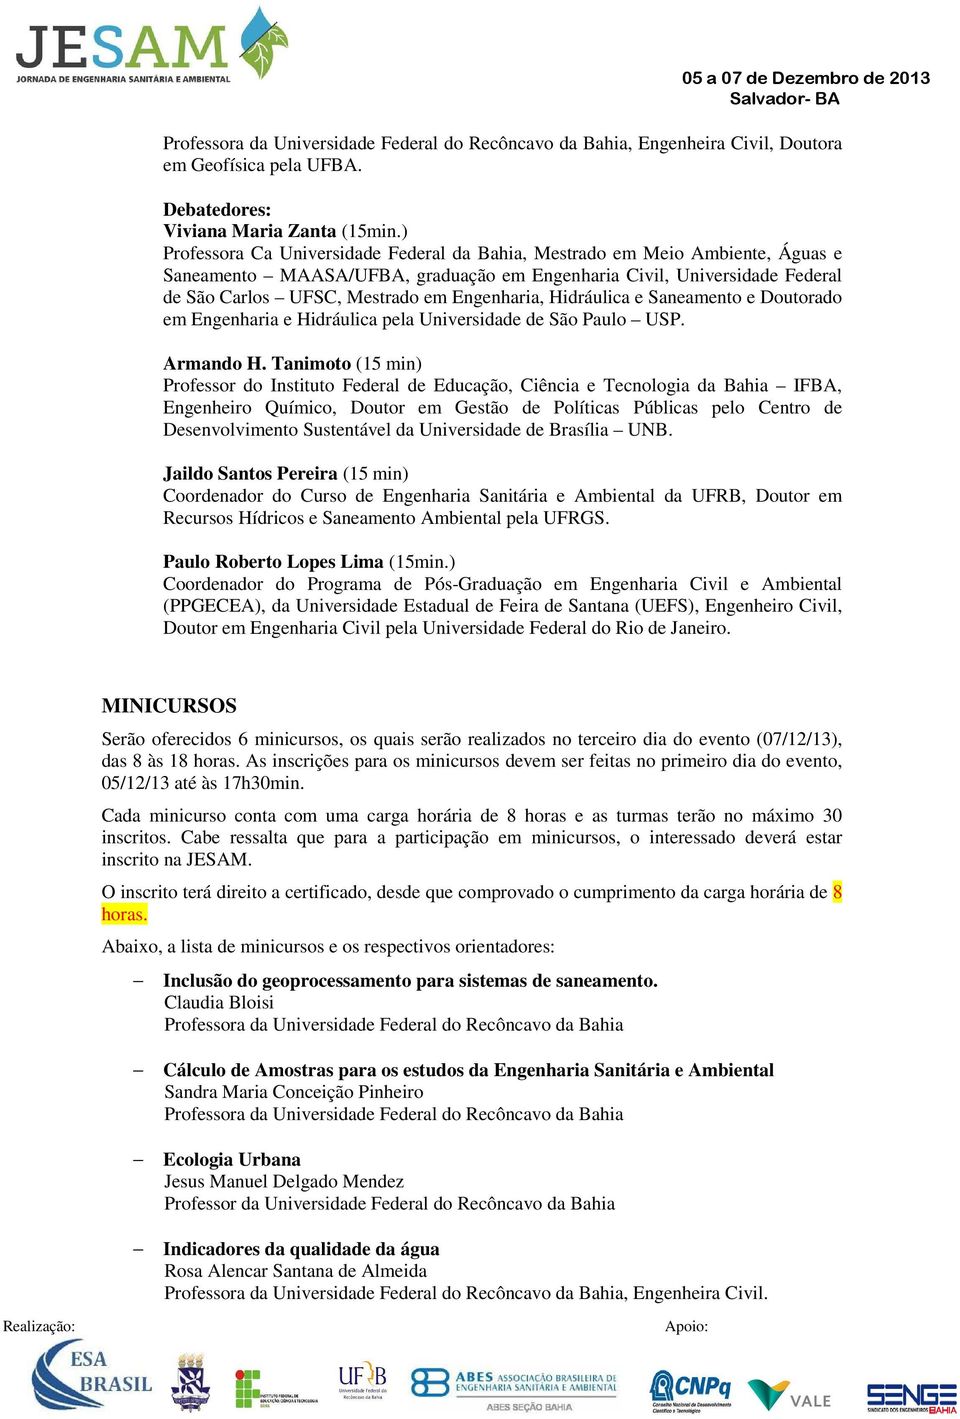 Engenharia, Hidráulica e Saneamento e Doutorado em Engenharia e Hidráulica pela Universidade de São Paulo USP. Armando H.